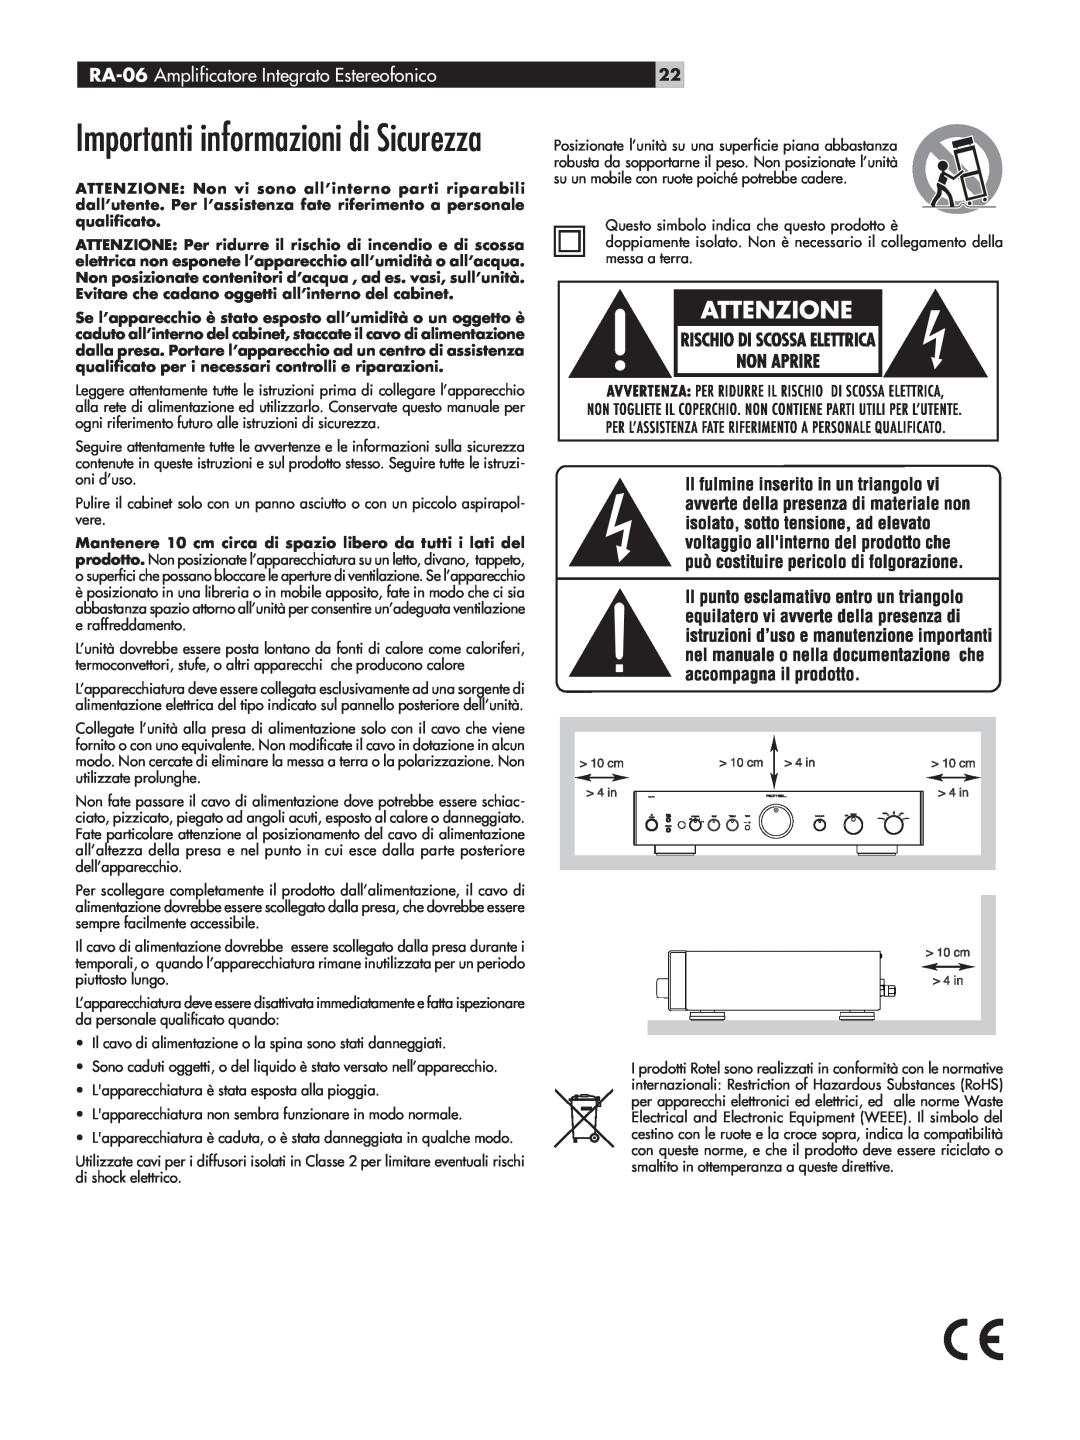 Rotel owner manual Importanti informazioni di Sicurezza, RA-06 Amplificatore Integrato Estereofonico 